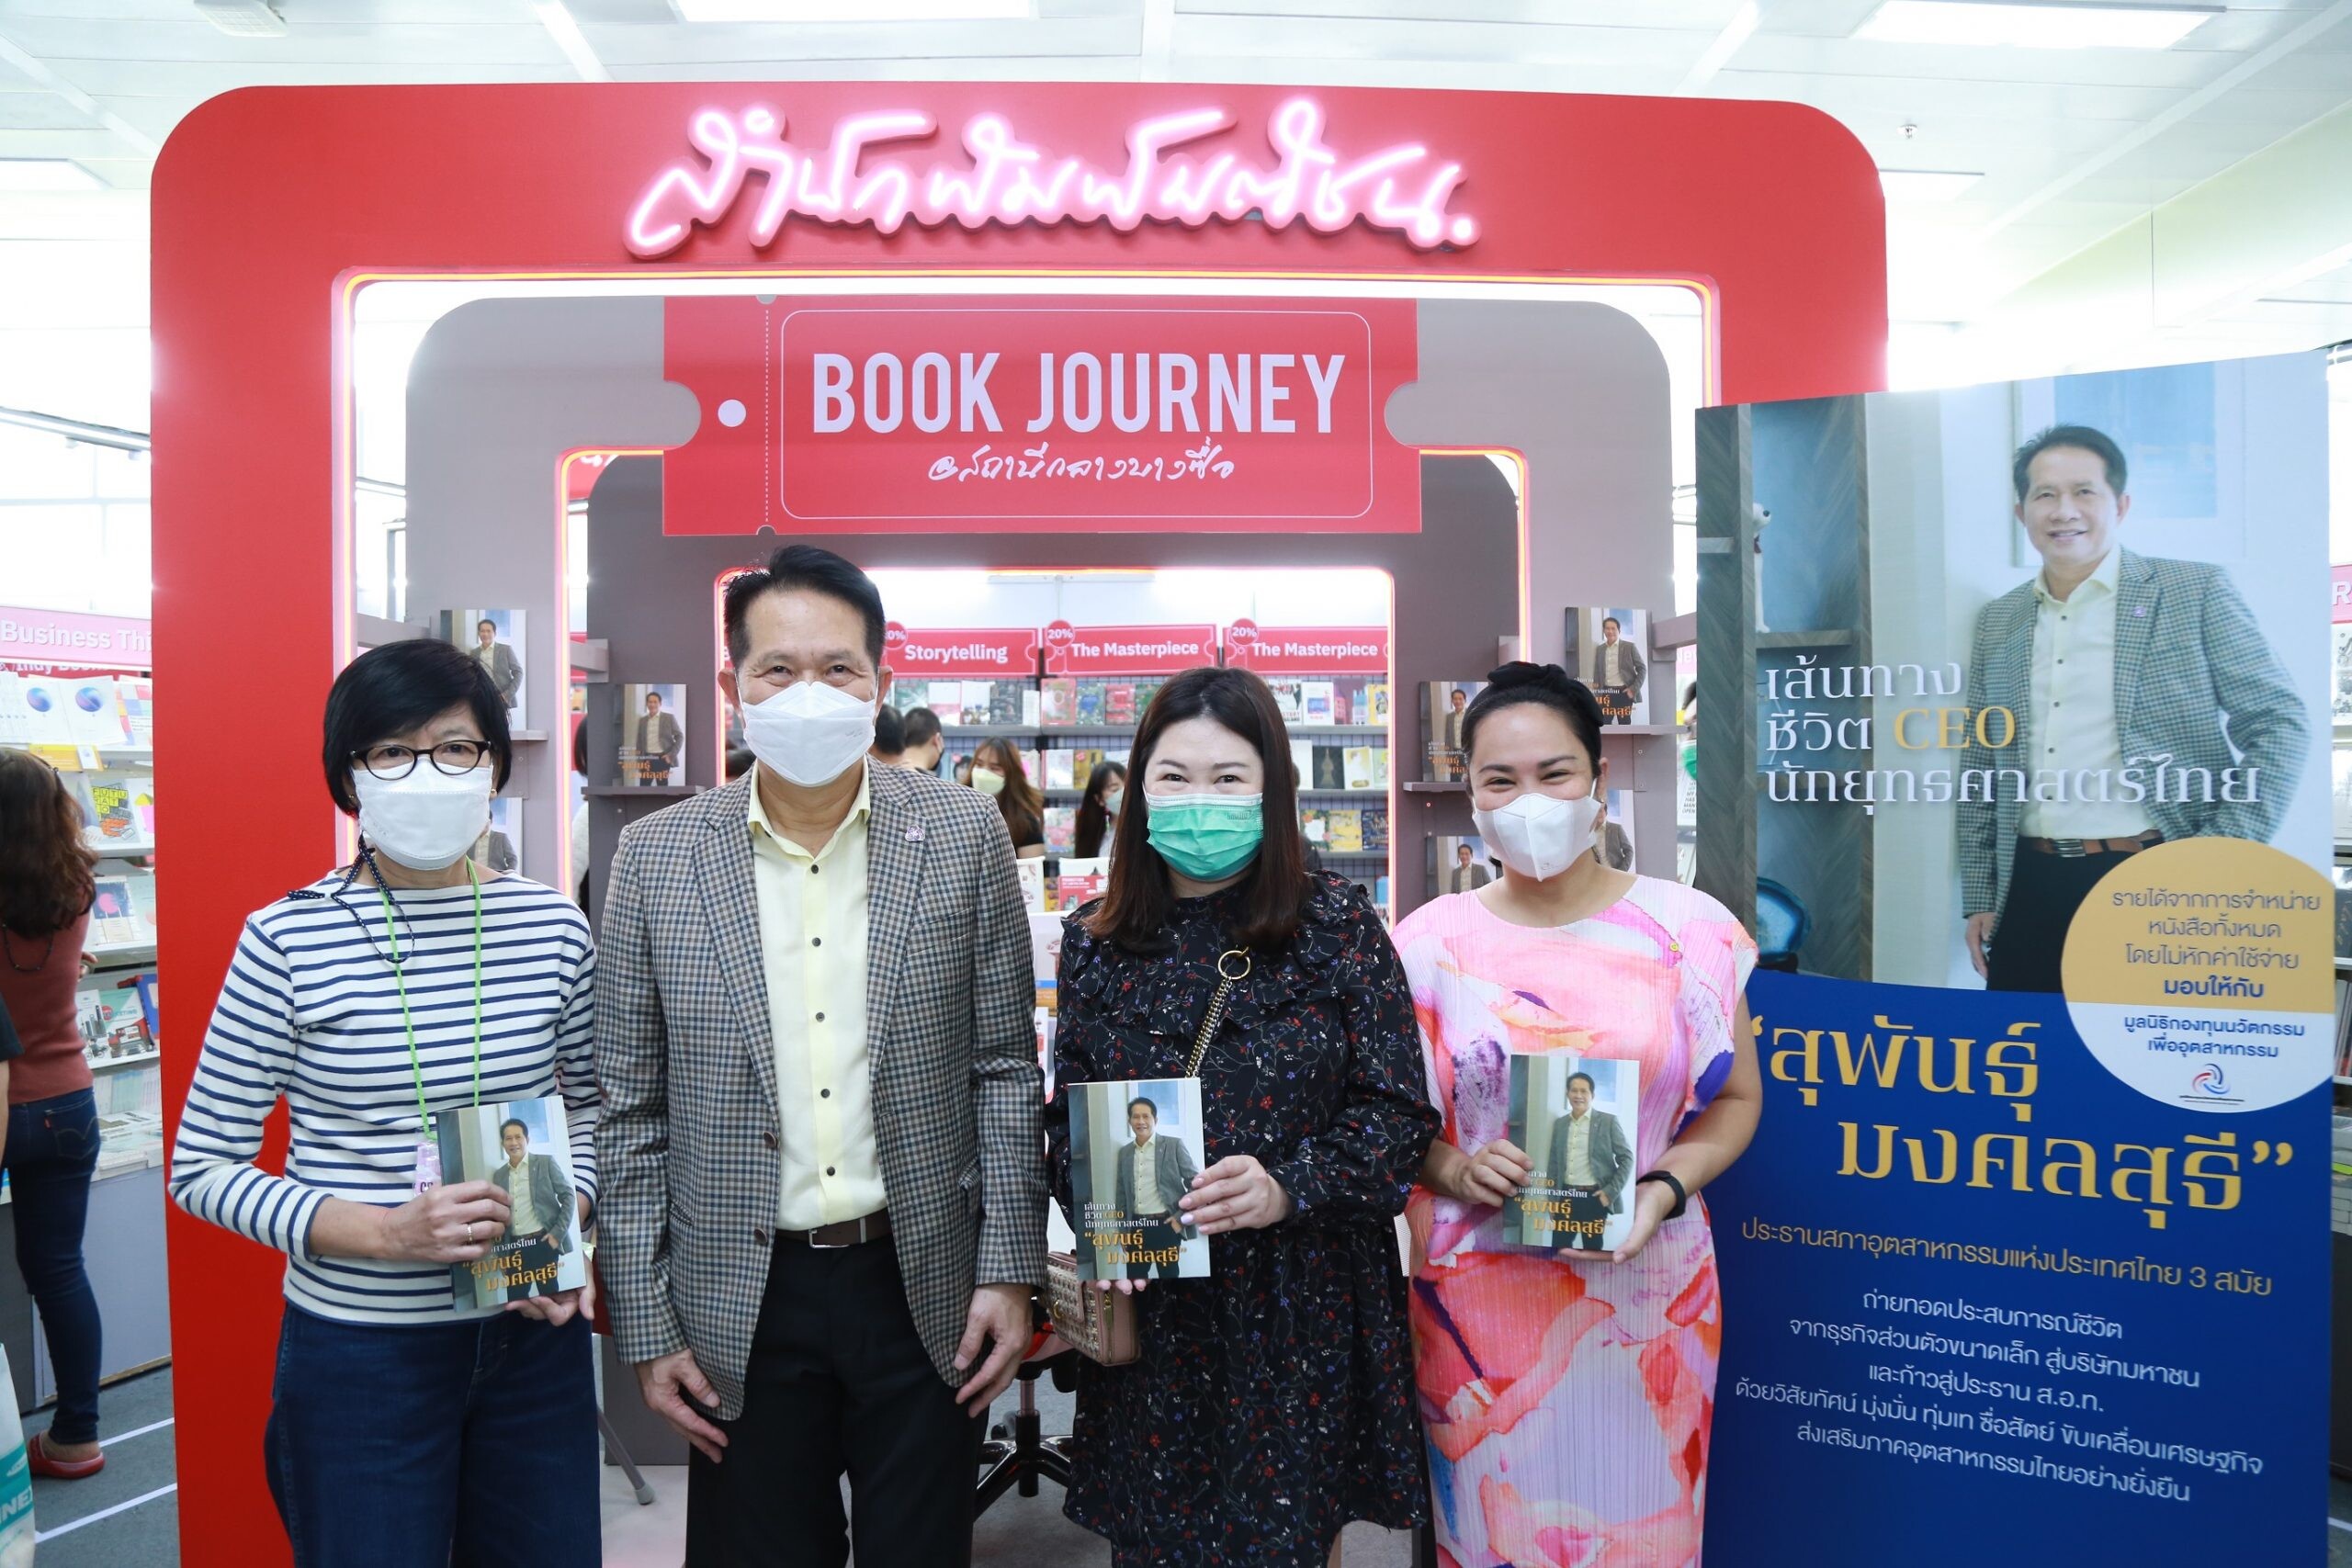 "สุพันธุ์ มงคลสุธี" เปิดตัวหนังสือสุดเอ็กซ์คลูซีฟ "เส้นทางชีวิต CEO นักยุทธศาสตร์ไทย" ในงานสัปดาห์หนังสือแห่งชาติ